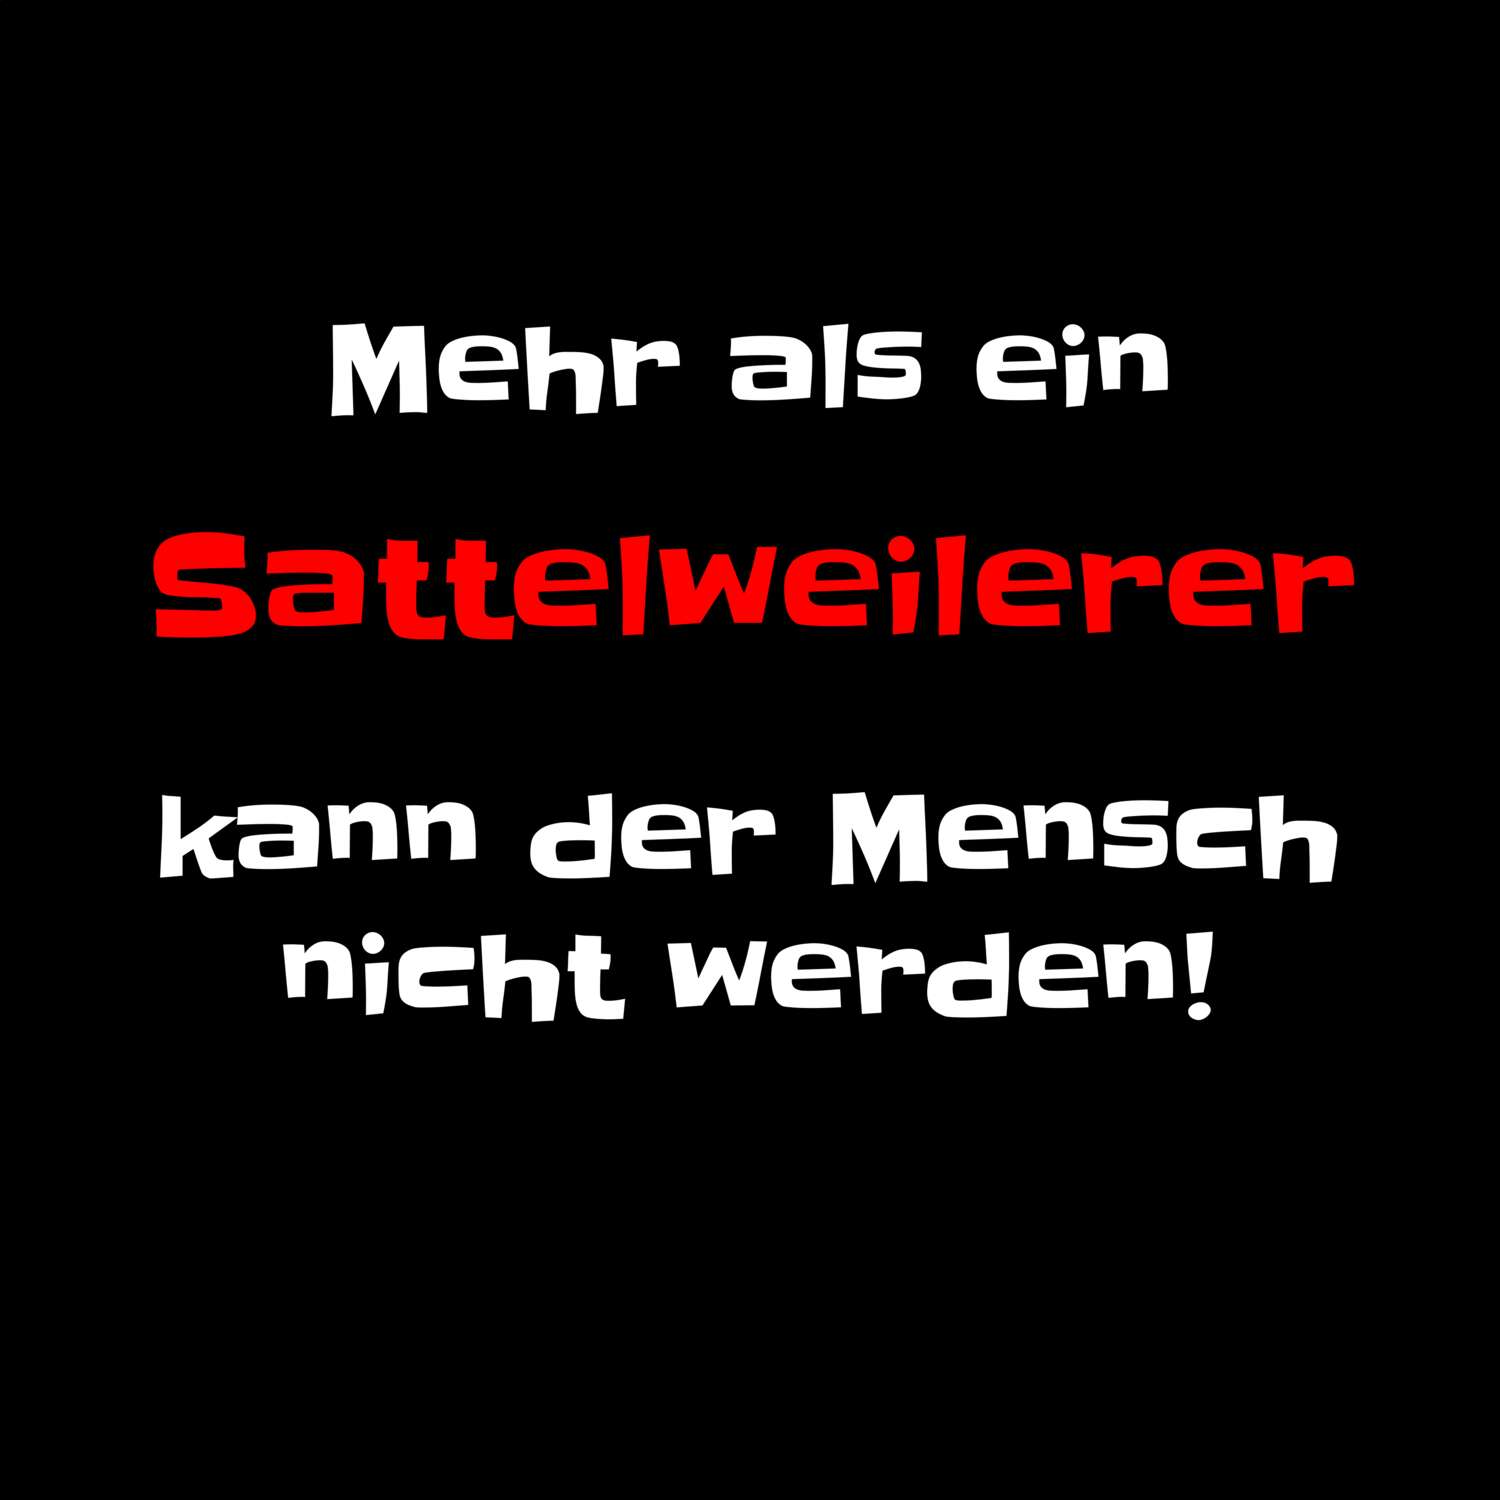 Sattelweiler T-Shirt »Mehr als ein«